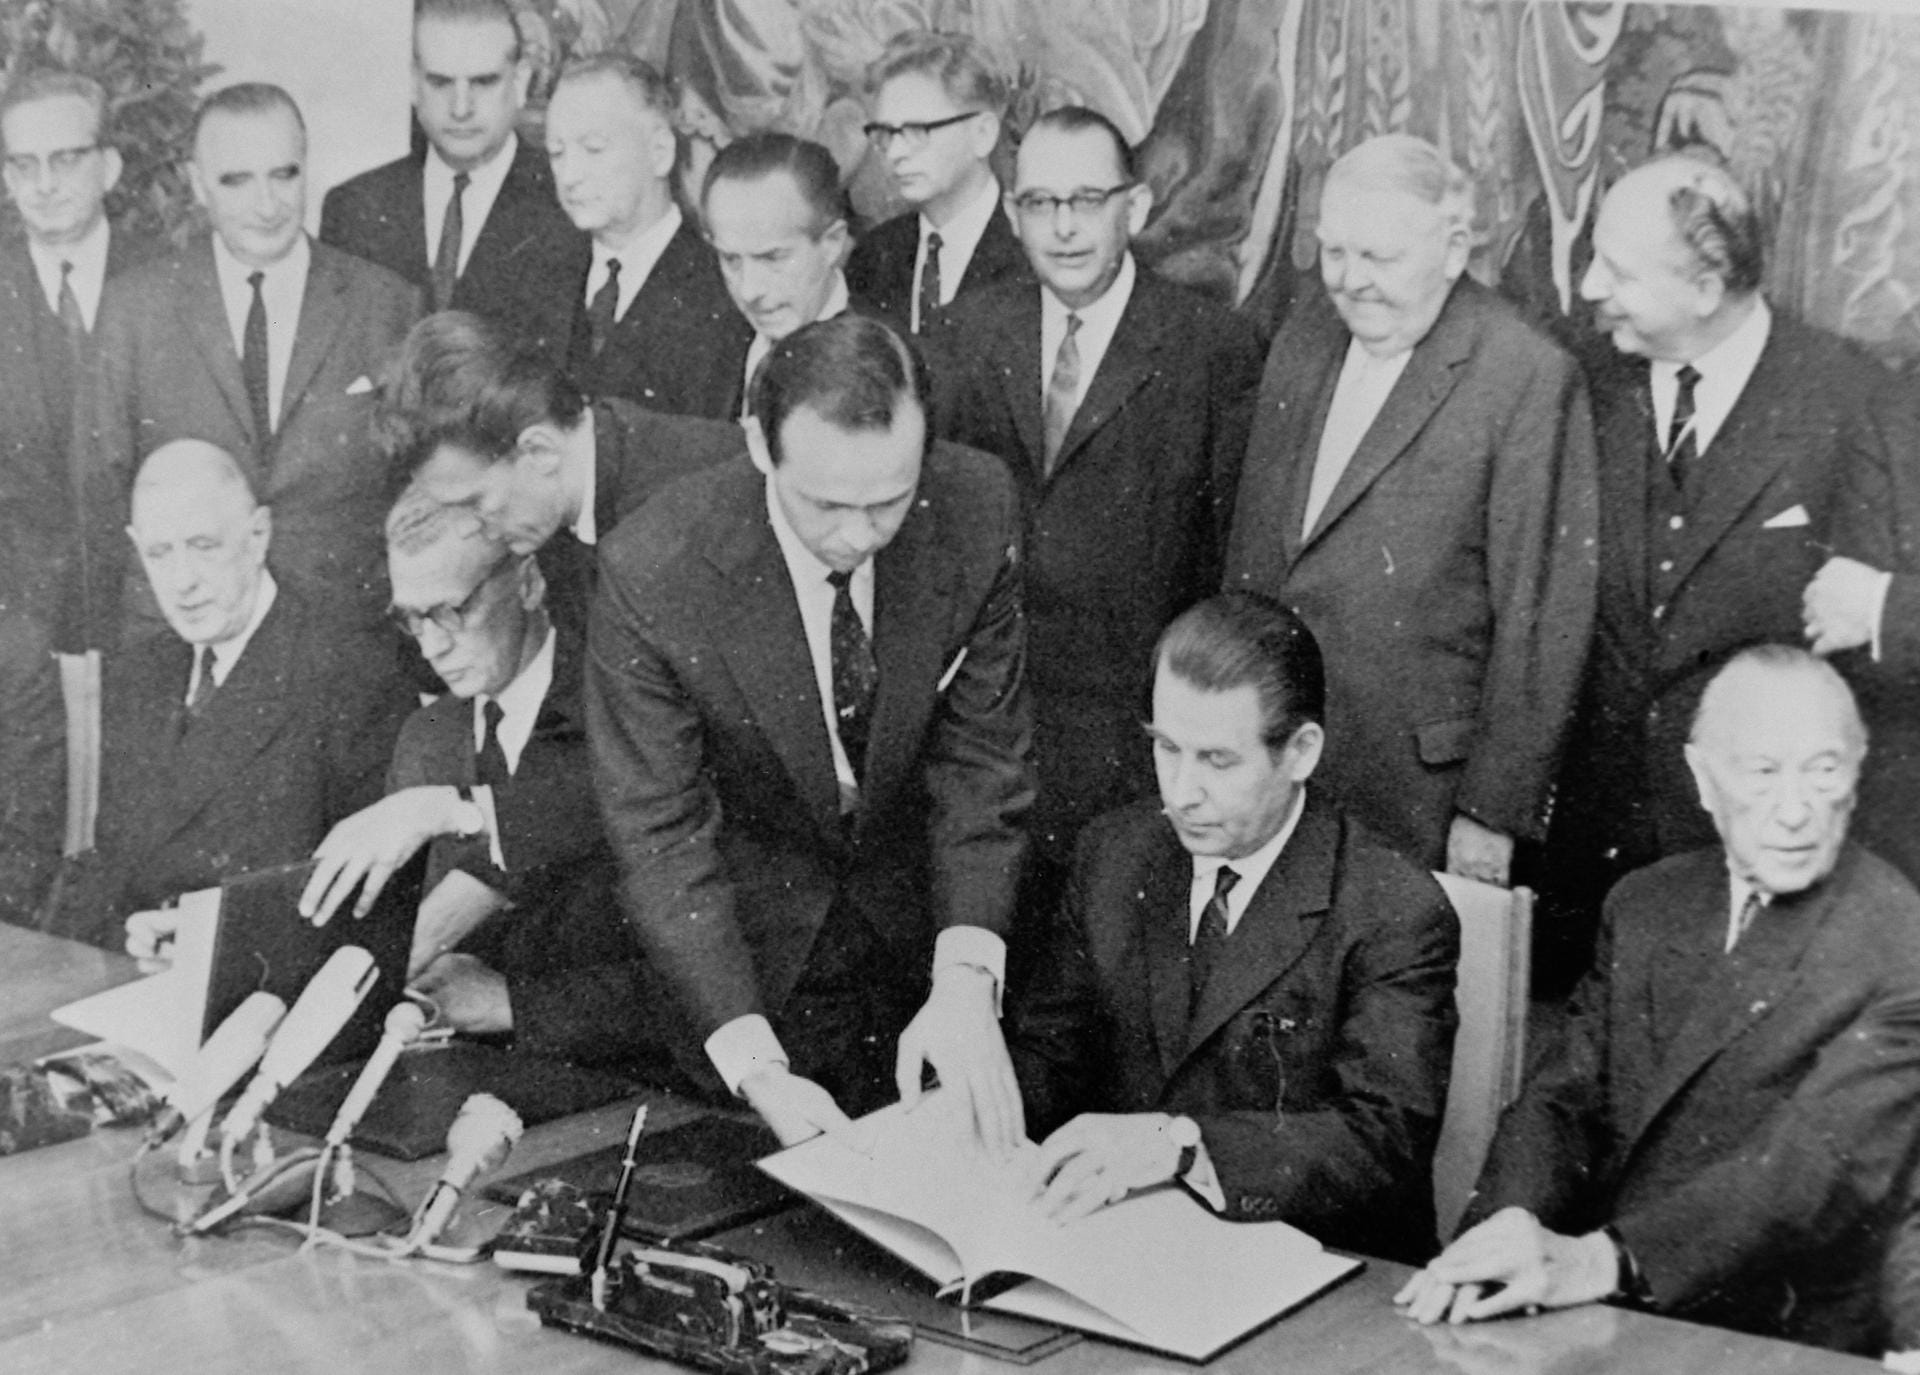 Am 22. Januar 1963 unterzeichnen Bundeskanzler Konrad Adenauer und der französische Staatspräsident Charles de Gaulle im Pariser Élysée-Palast den Vertrag der Deutsch-Französischen Freundschaft.